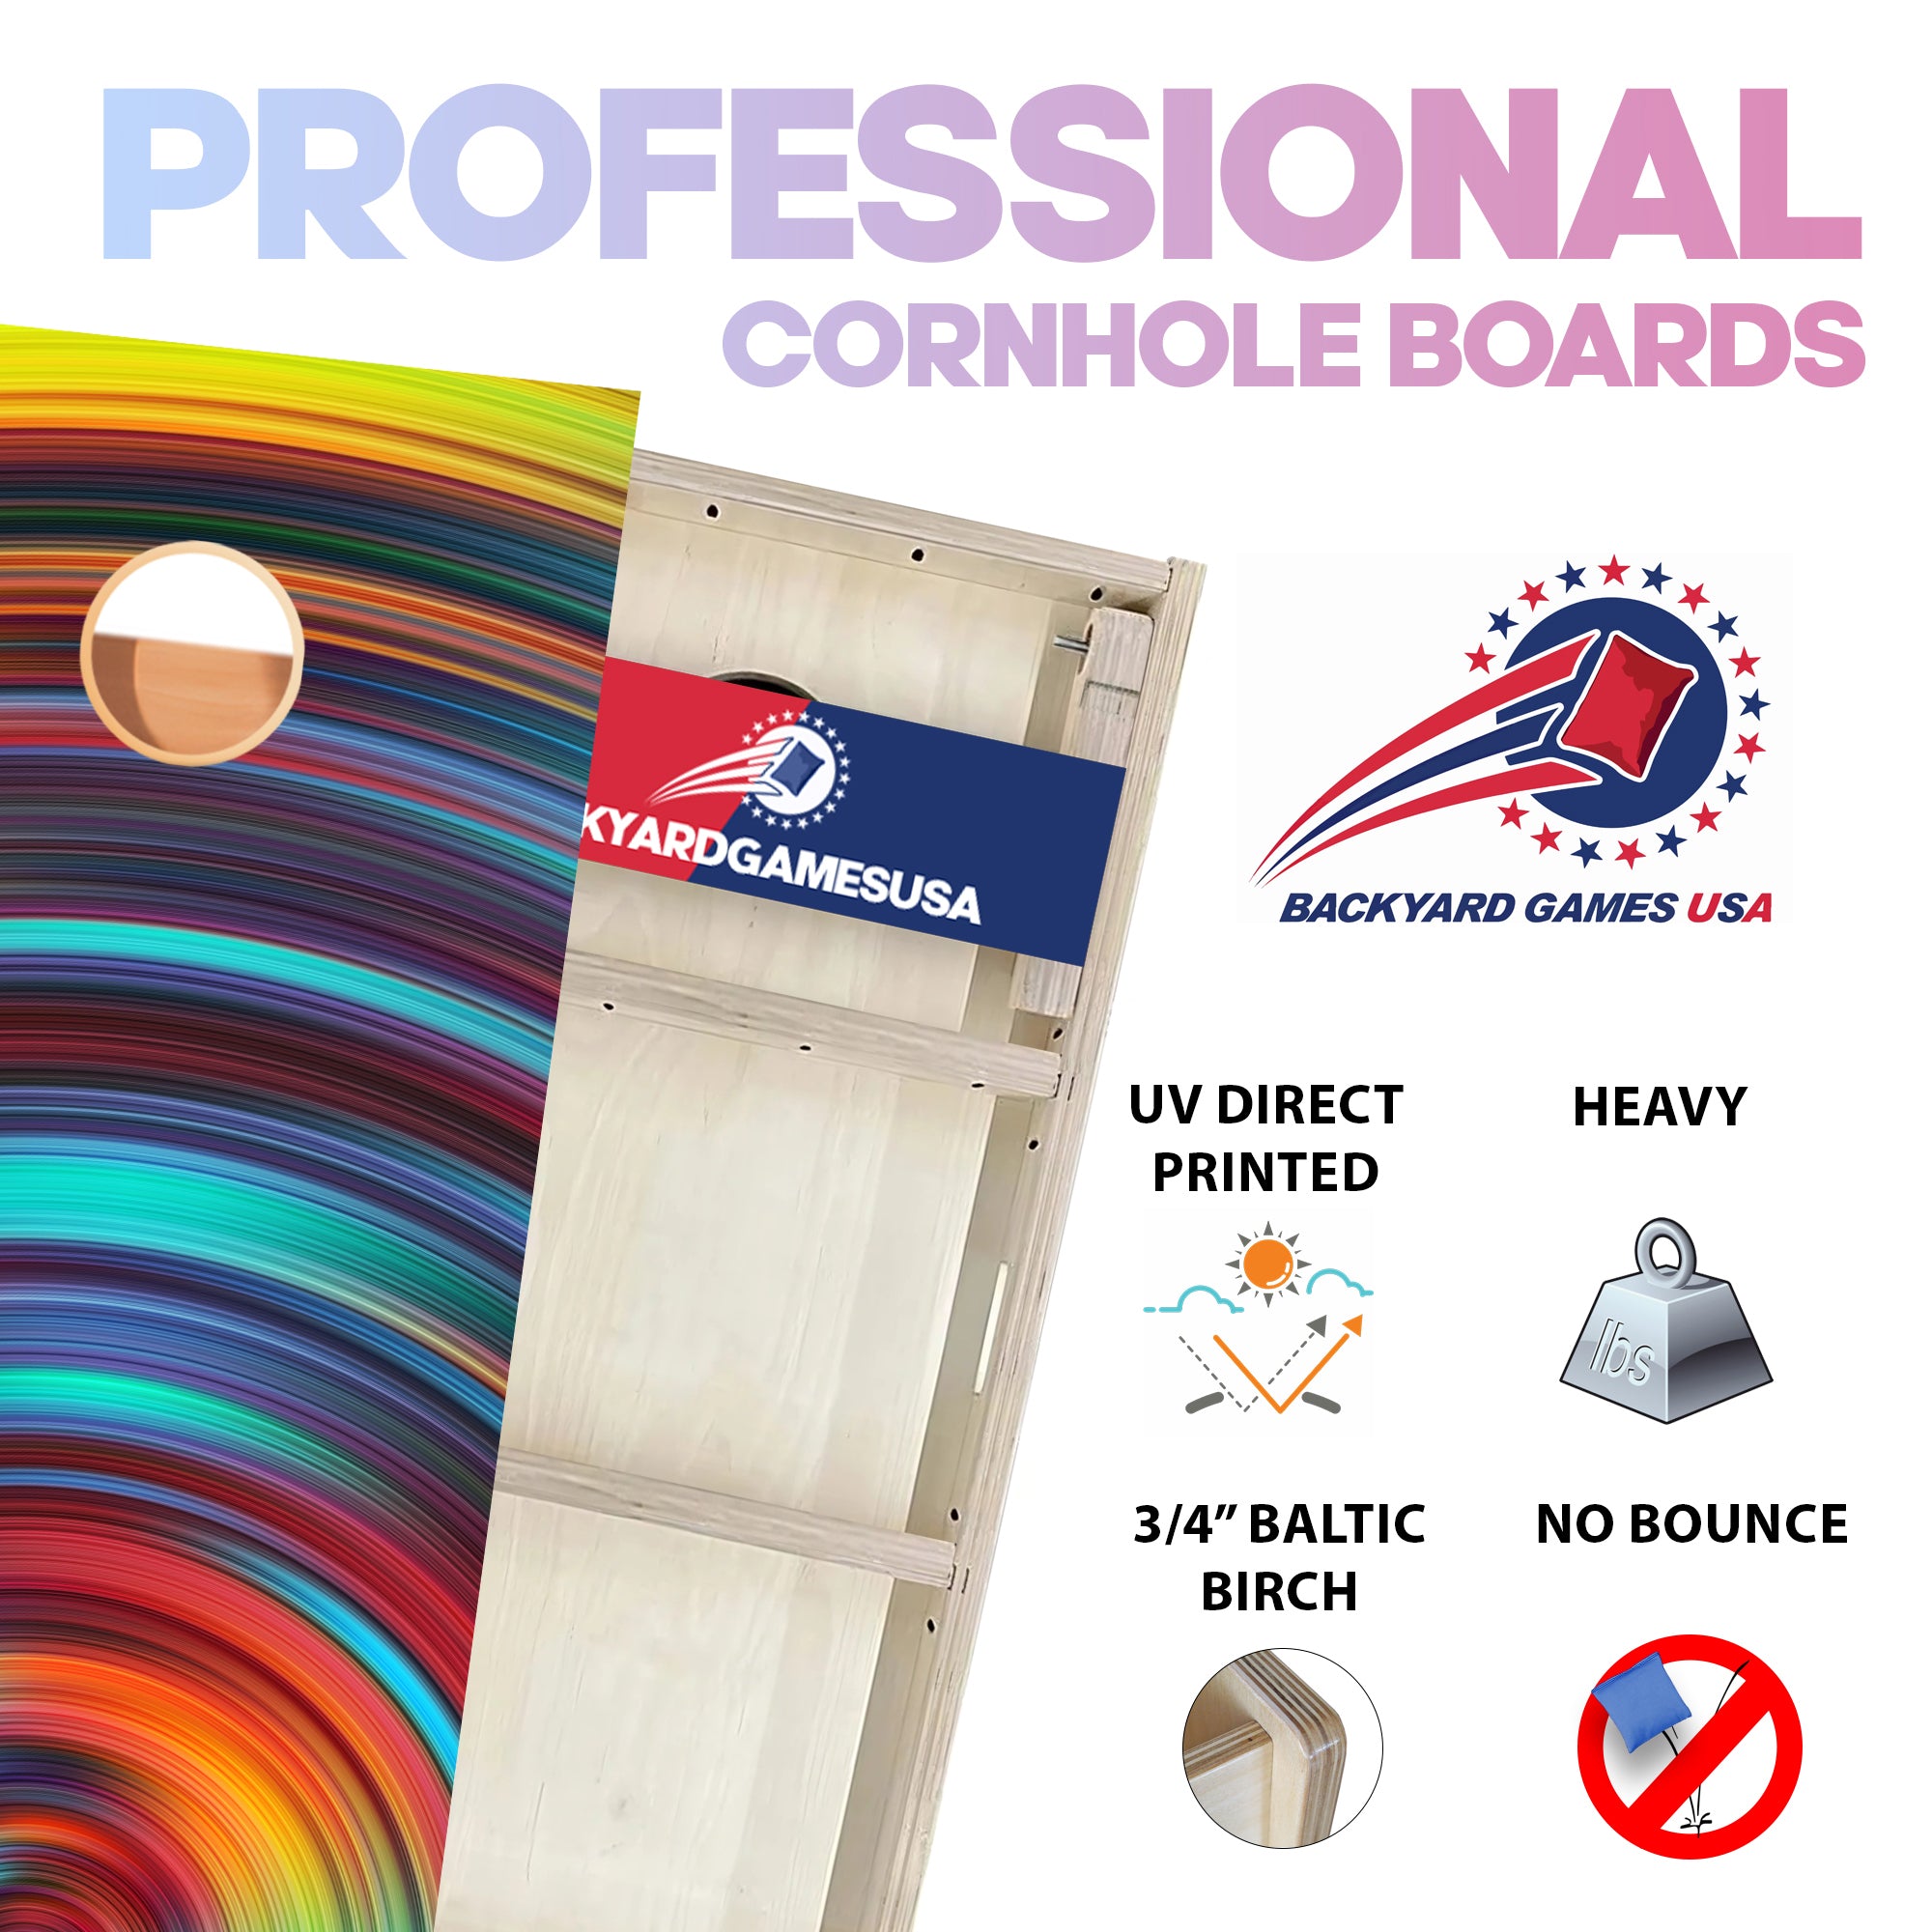 Swirly Color Professional Cornhole Boards